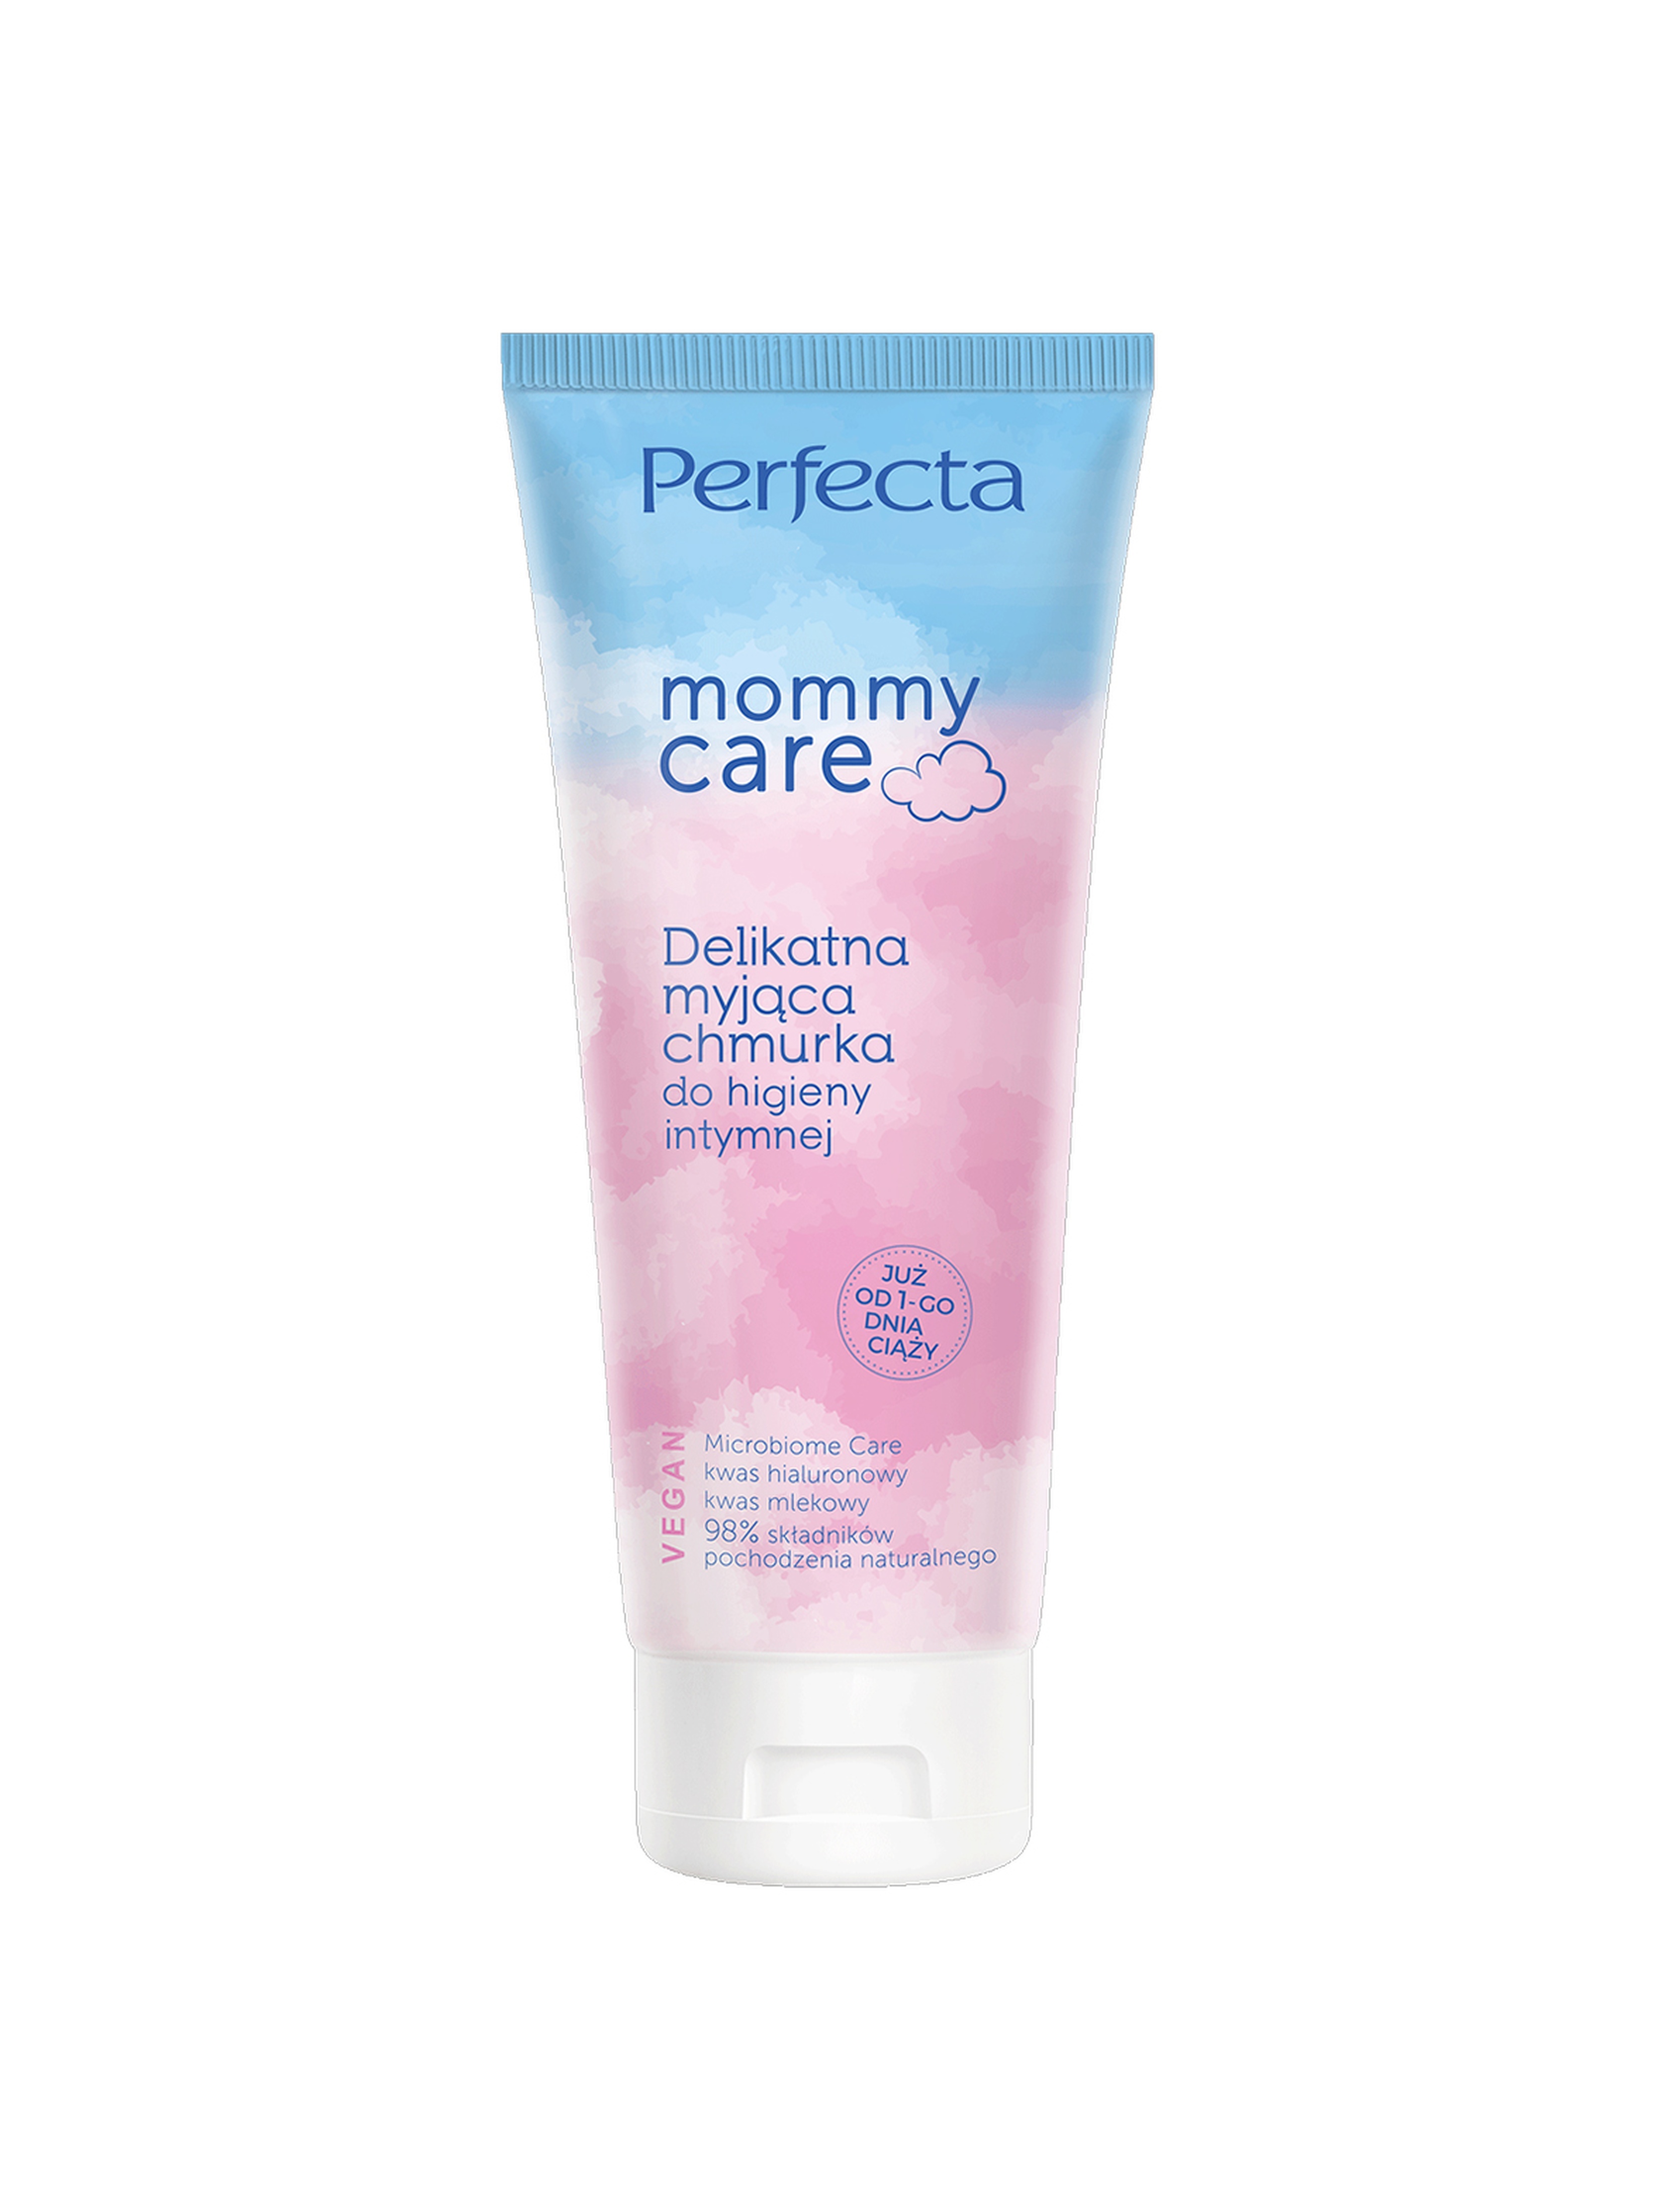 Perfecta Mommy Care, delikatna myjąca chmurka do higieny intymnej, 250 ml